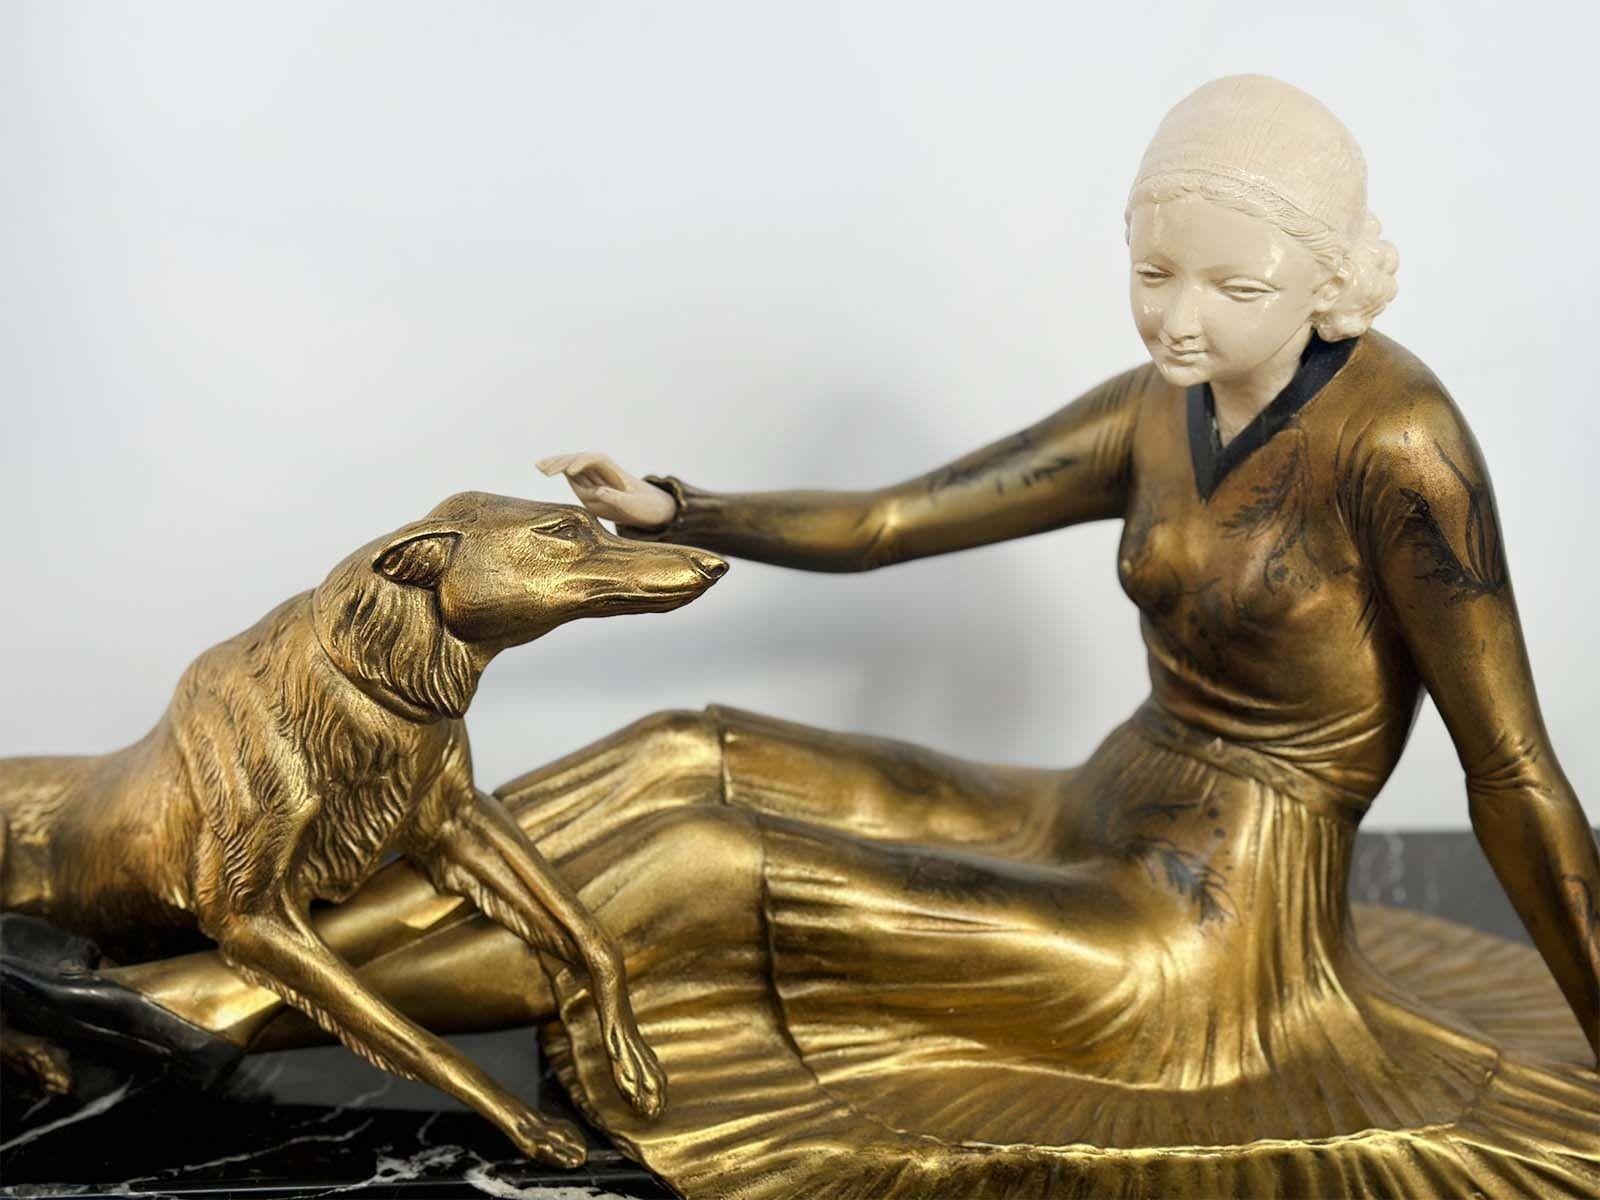 Splendide sculpture Art déco d'une femme et de son chien Barzoï sculptée en métal blanc et finition patine bronze ; elle repose sur un socle en marbre noir. Fabriqué par HENRY (Amédée Charles Henri, Compte de Noé) en France dans les années 1920. Il